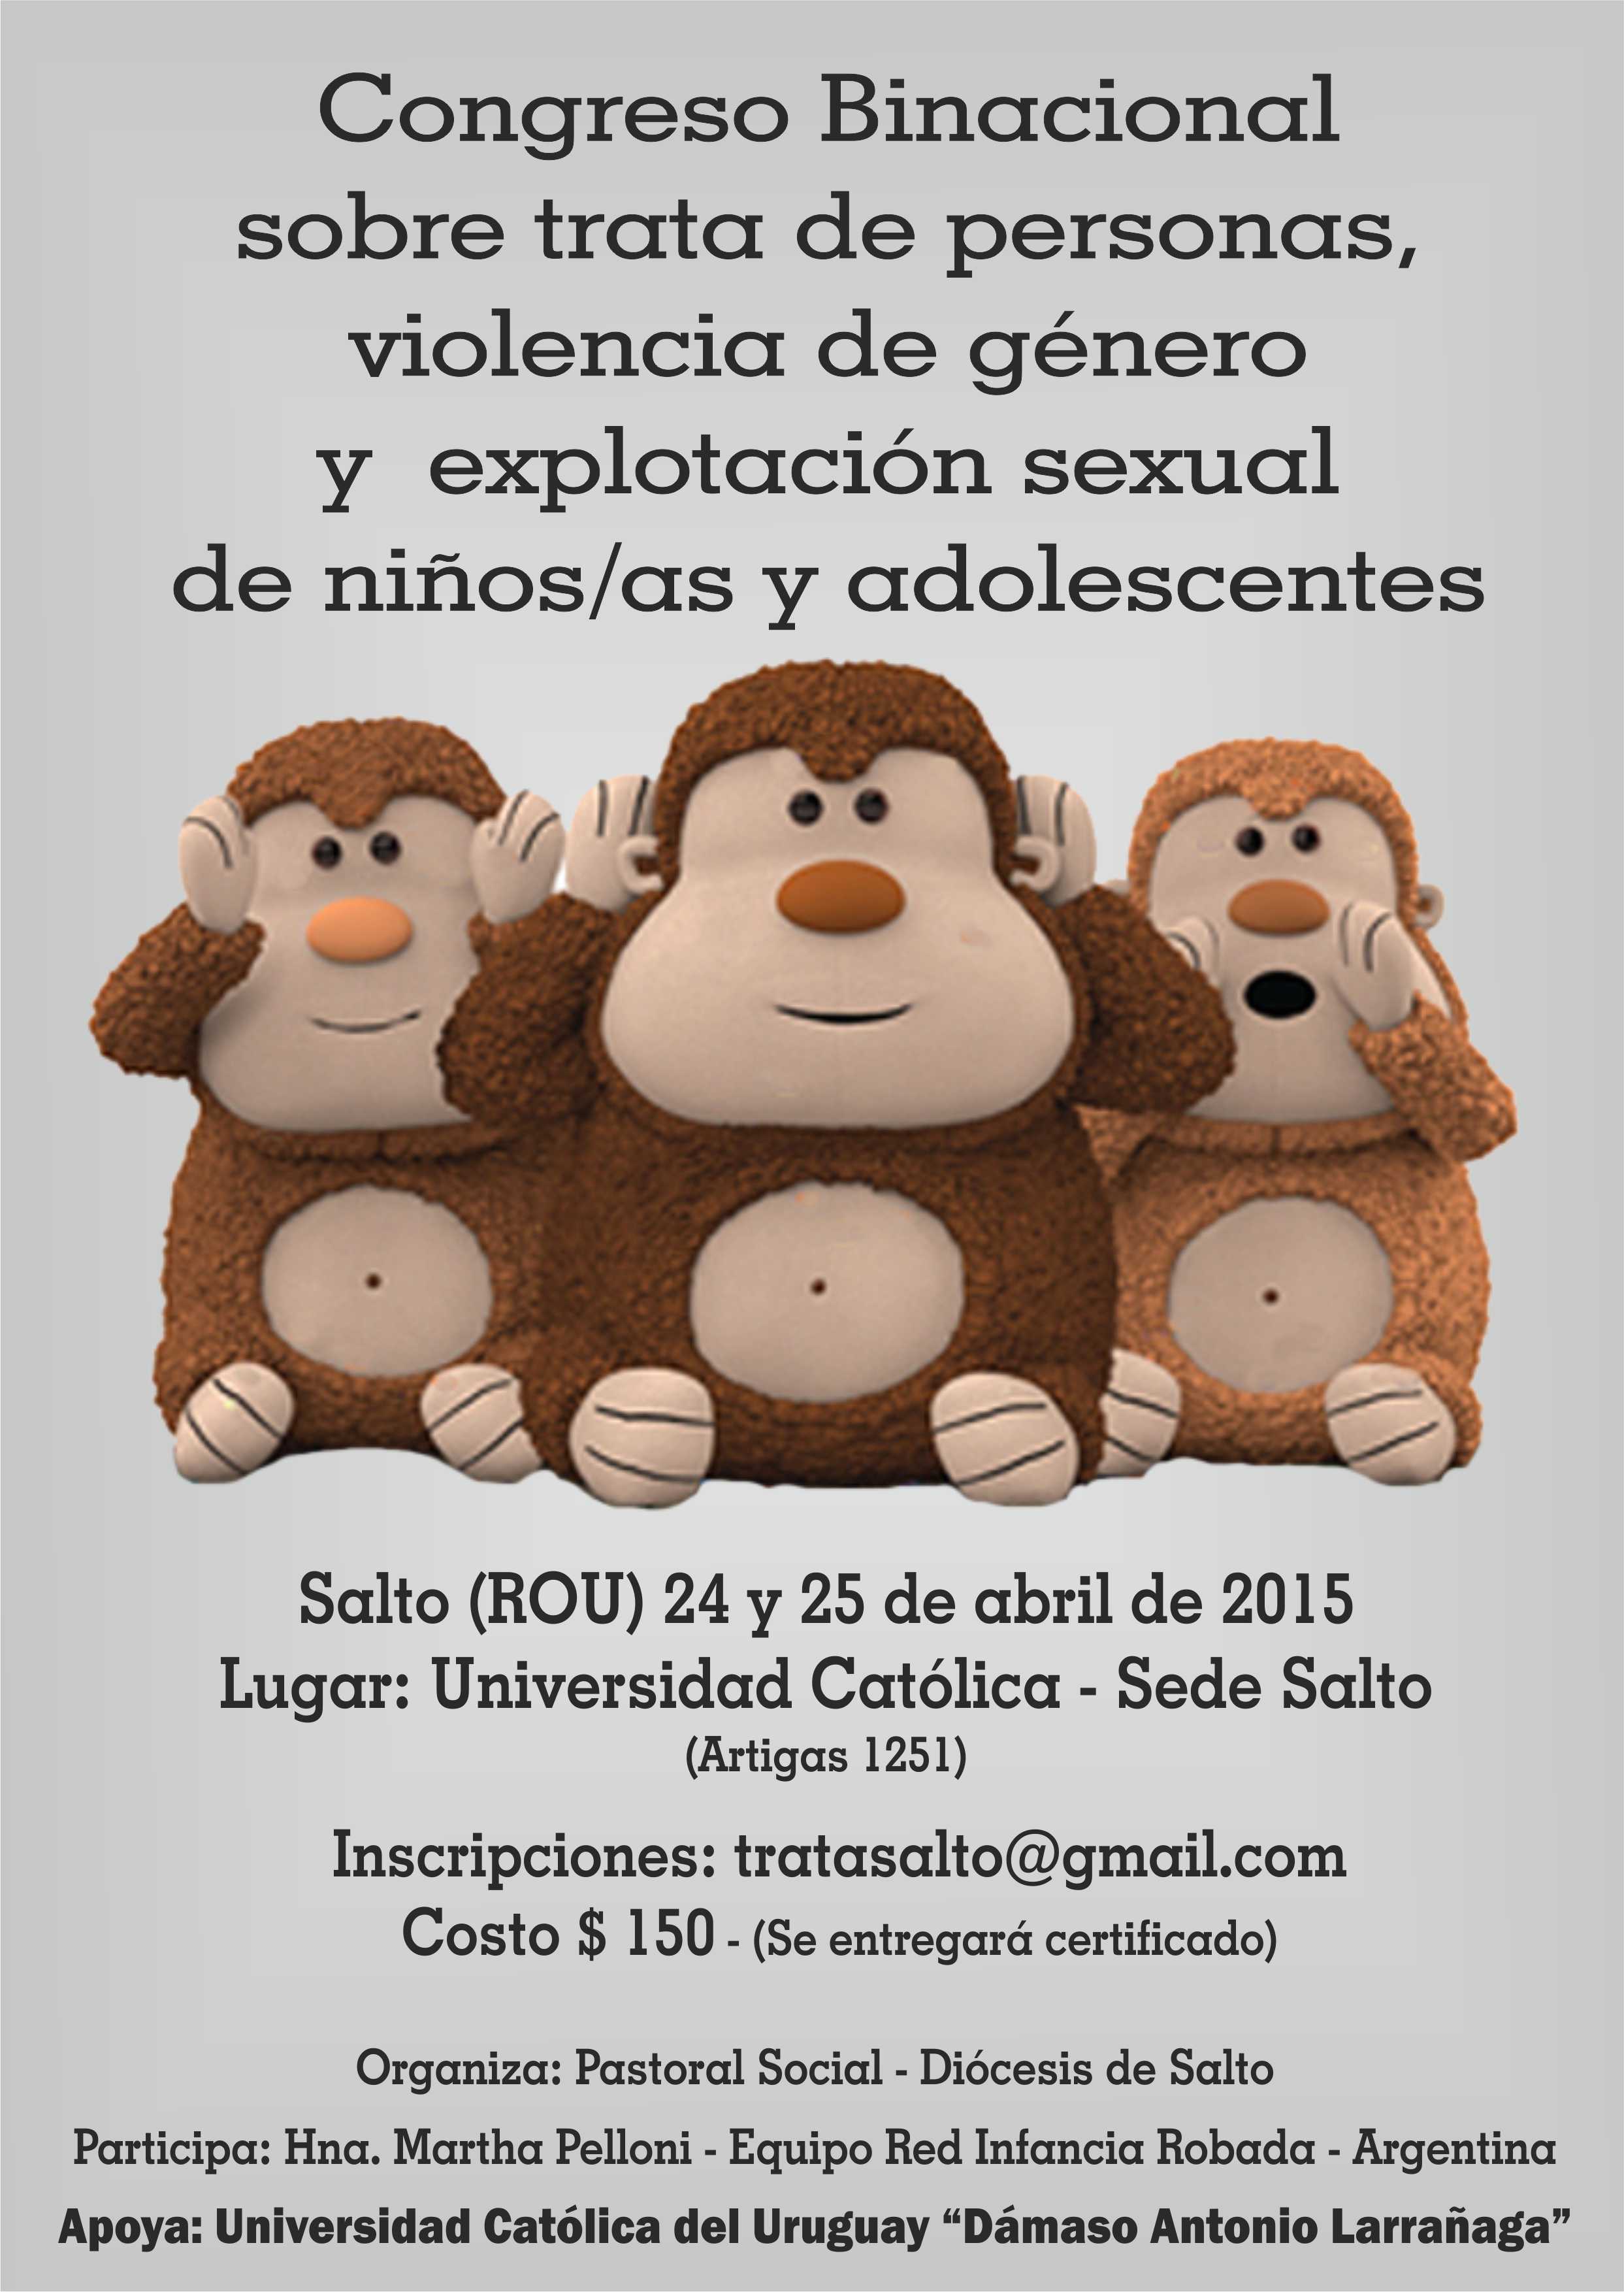 Congreso Binacional sobre trata de personas en Salto